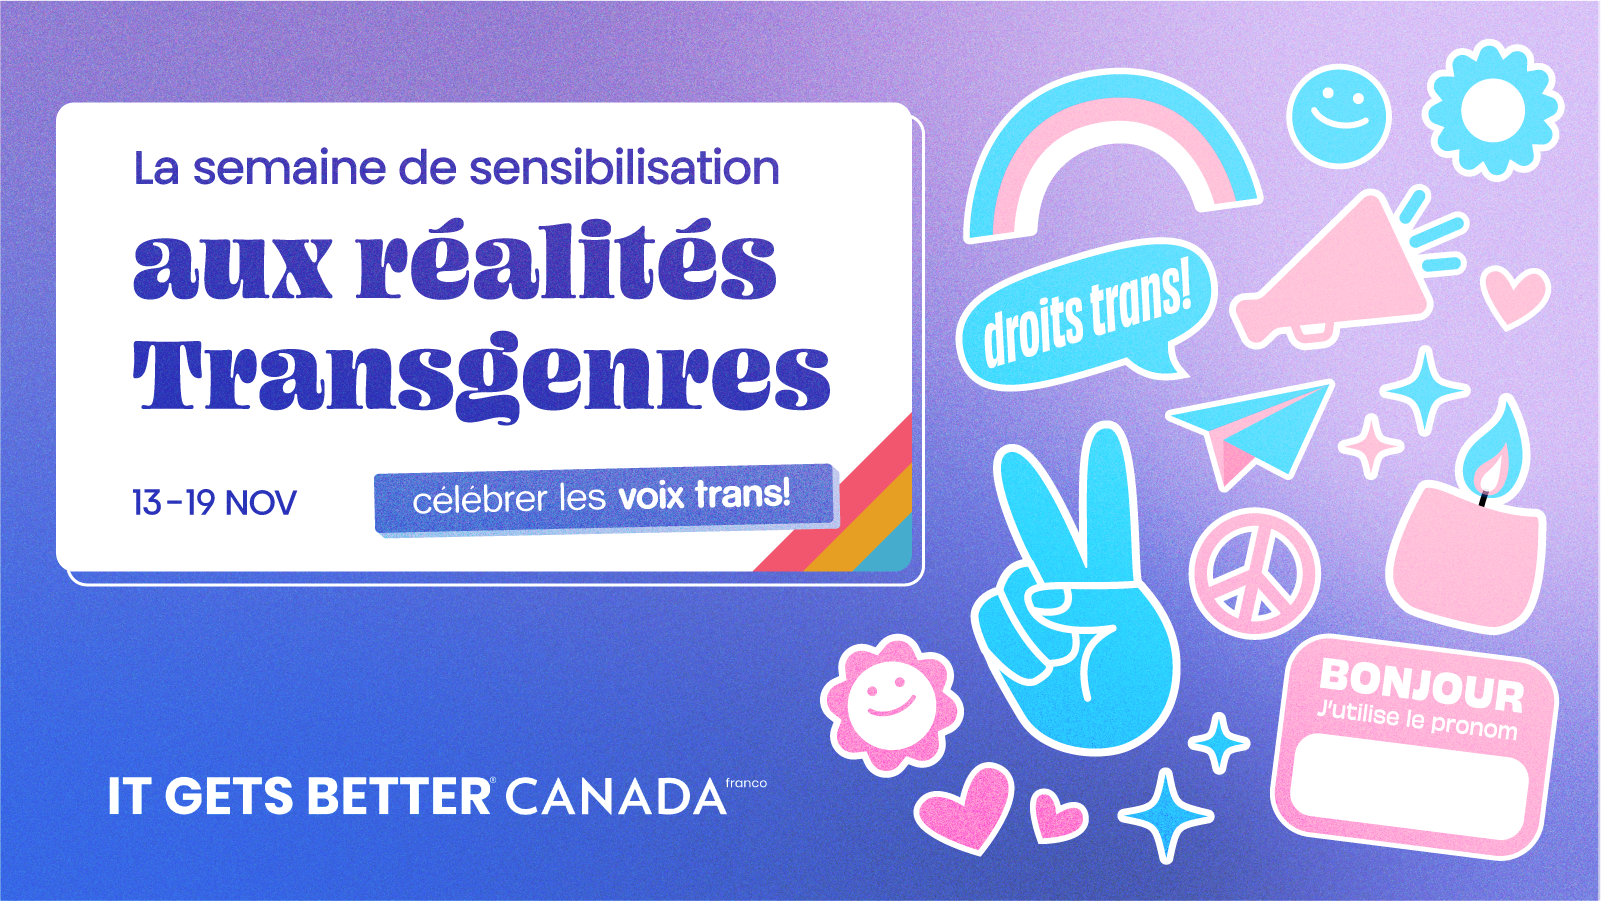 Bannière sur la semaine de sensibilisation aux transgenres créée par It Gets Better Canada.